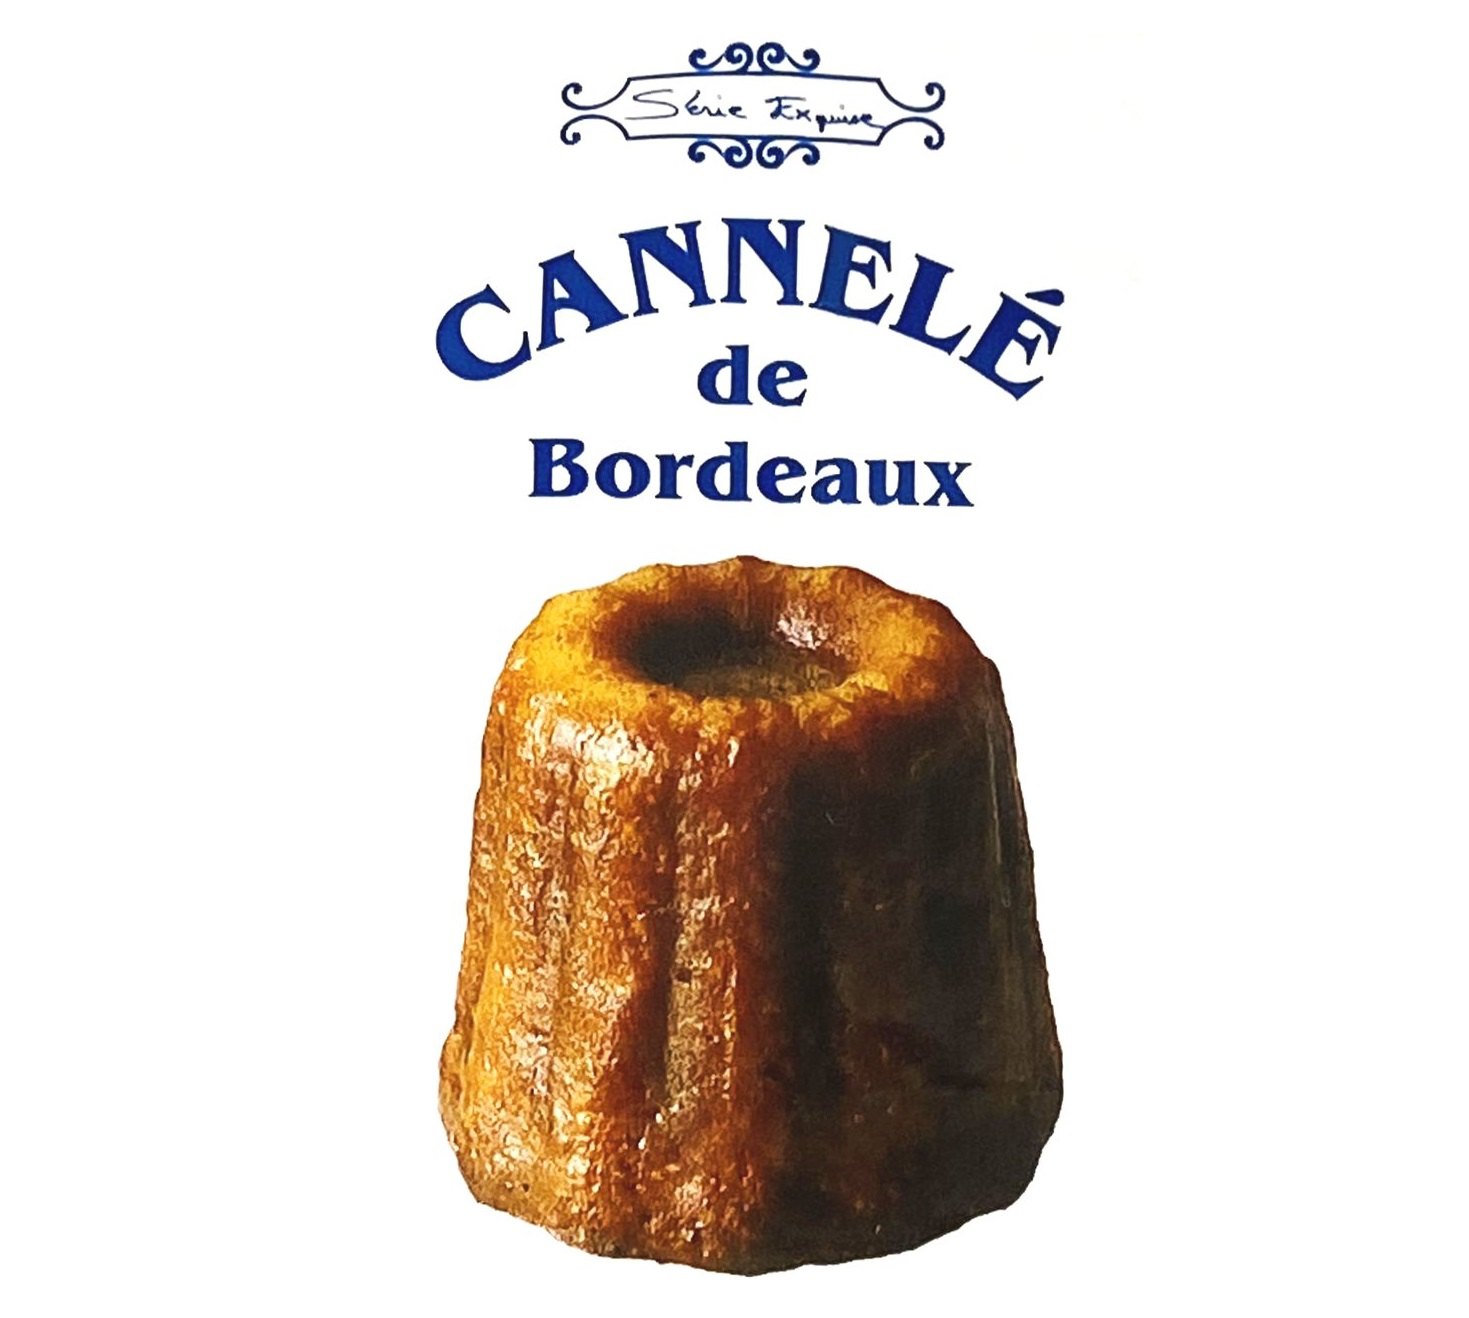 Serie Exquise Cannelé de Bordeaux